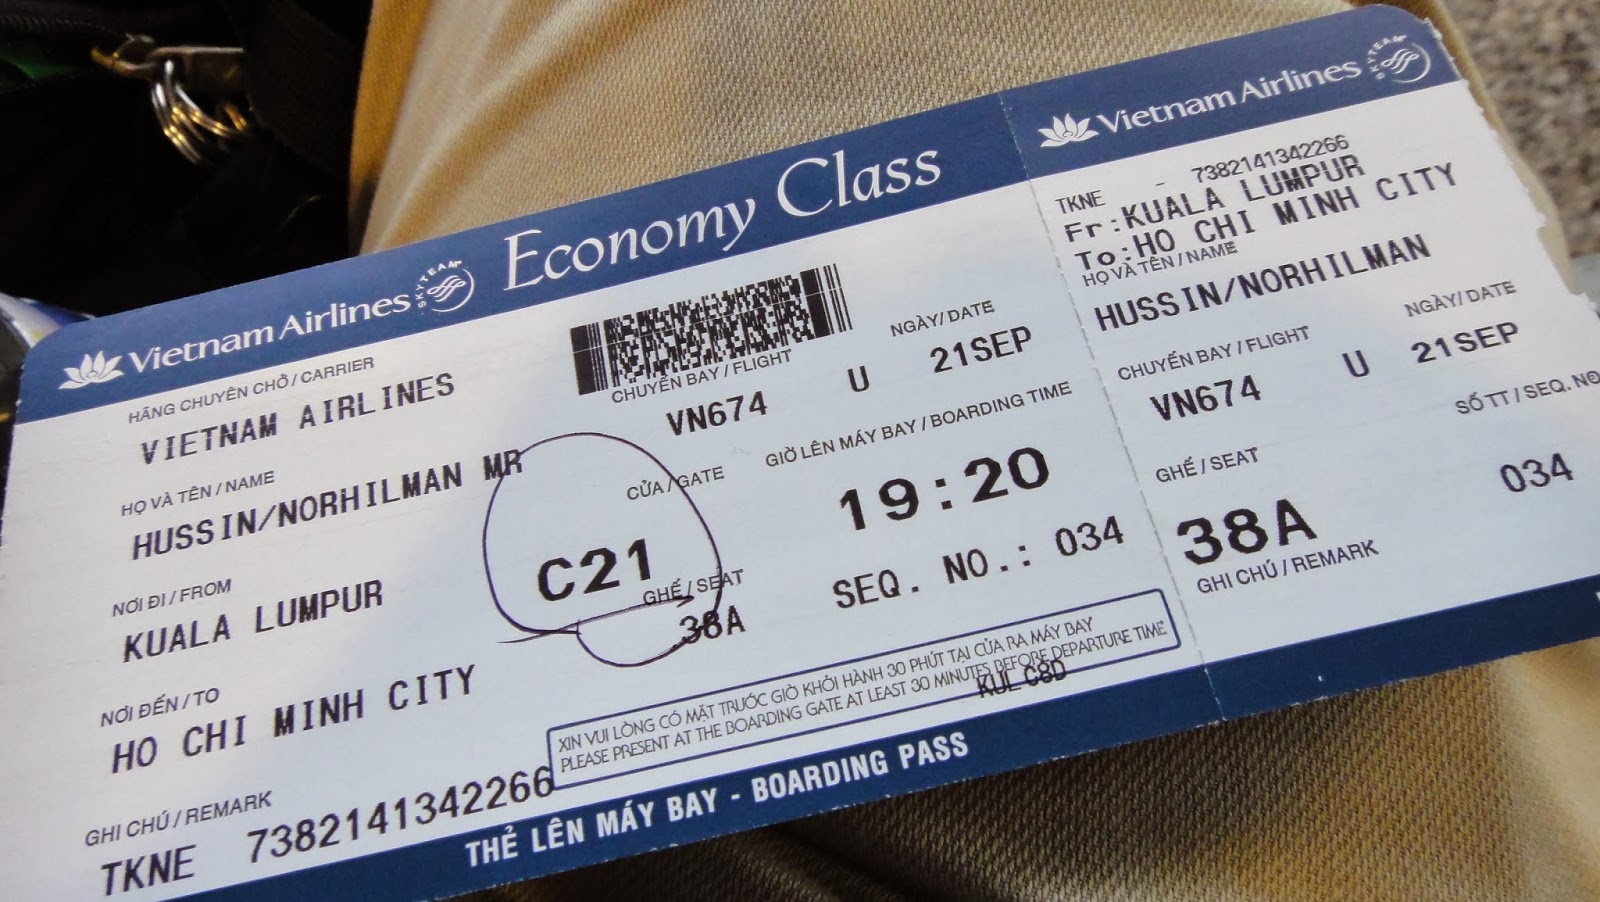 Nếu bạn cần hủy vé máy bay Vietnam Airlines vì những lý do không lường trước được, đừng lo lắng quá. Vietnam Airlines sẽ giúp bạn giải quyết vấn đề một cách nhanh chóng và tiện lợi. Hãy đến với chúng tôi để có được sự hỗ trợ tốt nhất trong quá trình hủy vé của bạn.